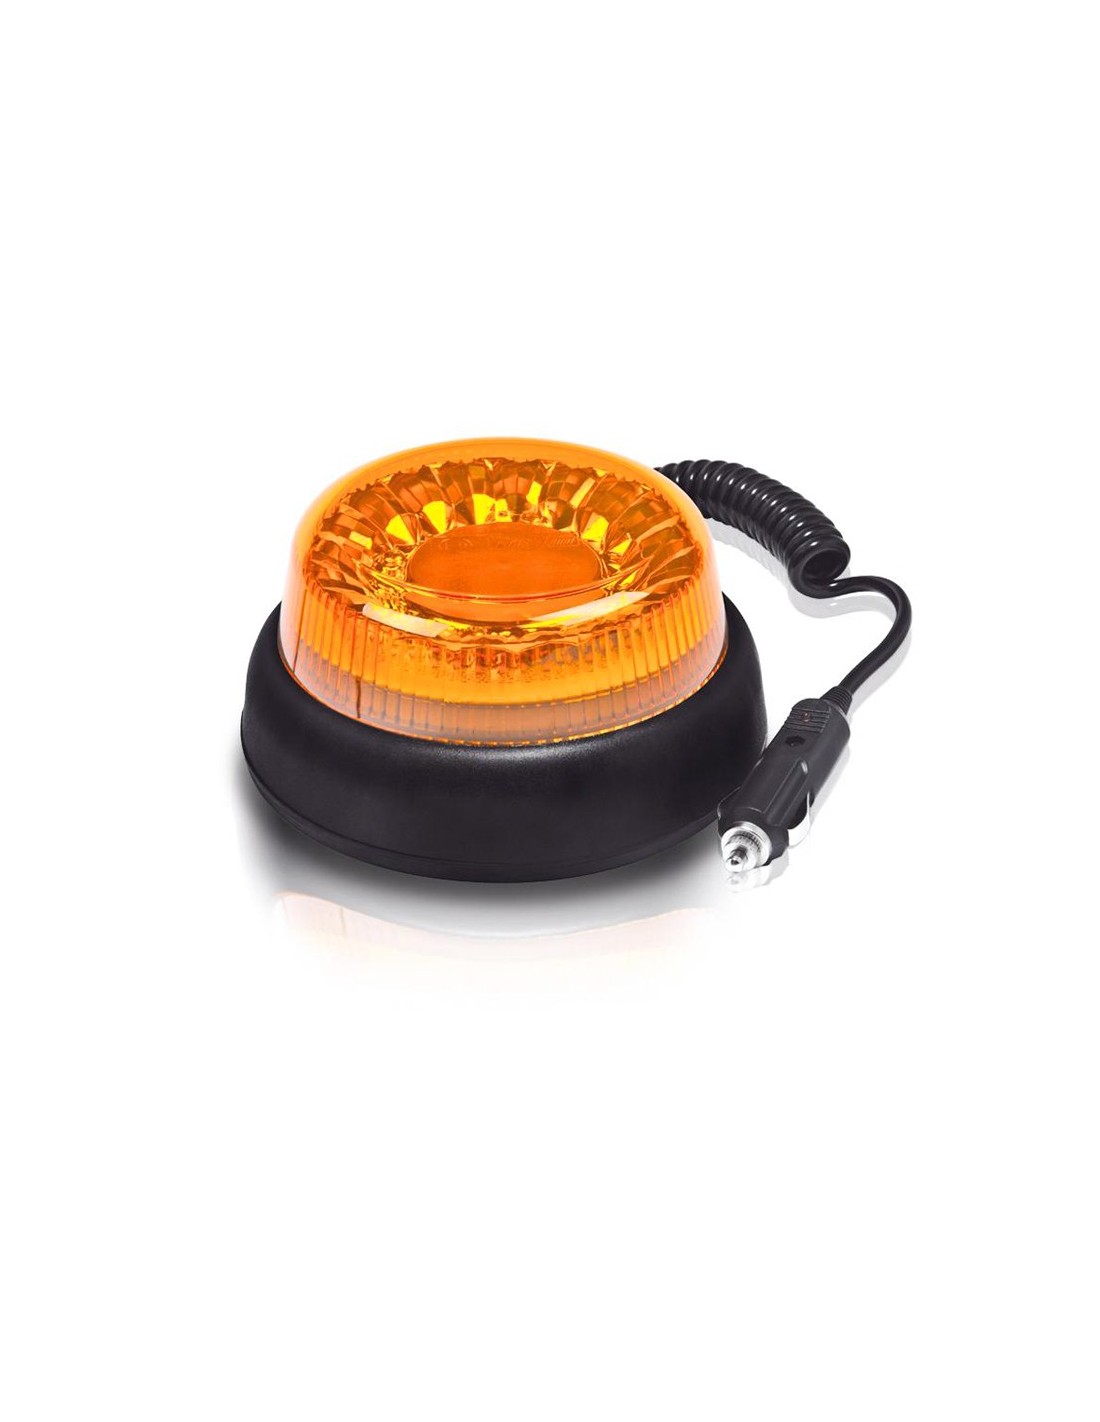 Gyrophare LED magnétique 12V sans fil compact